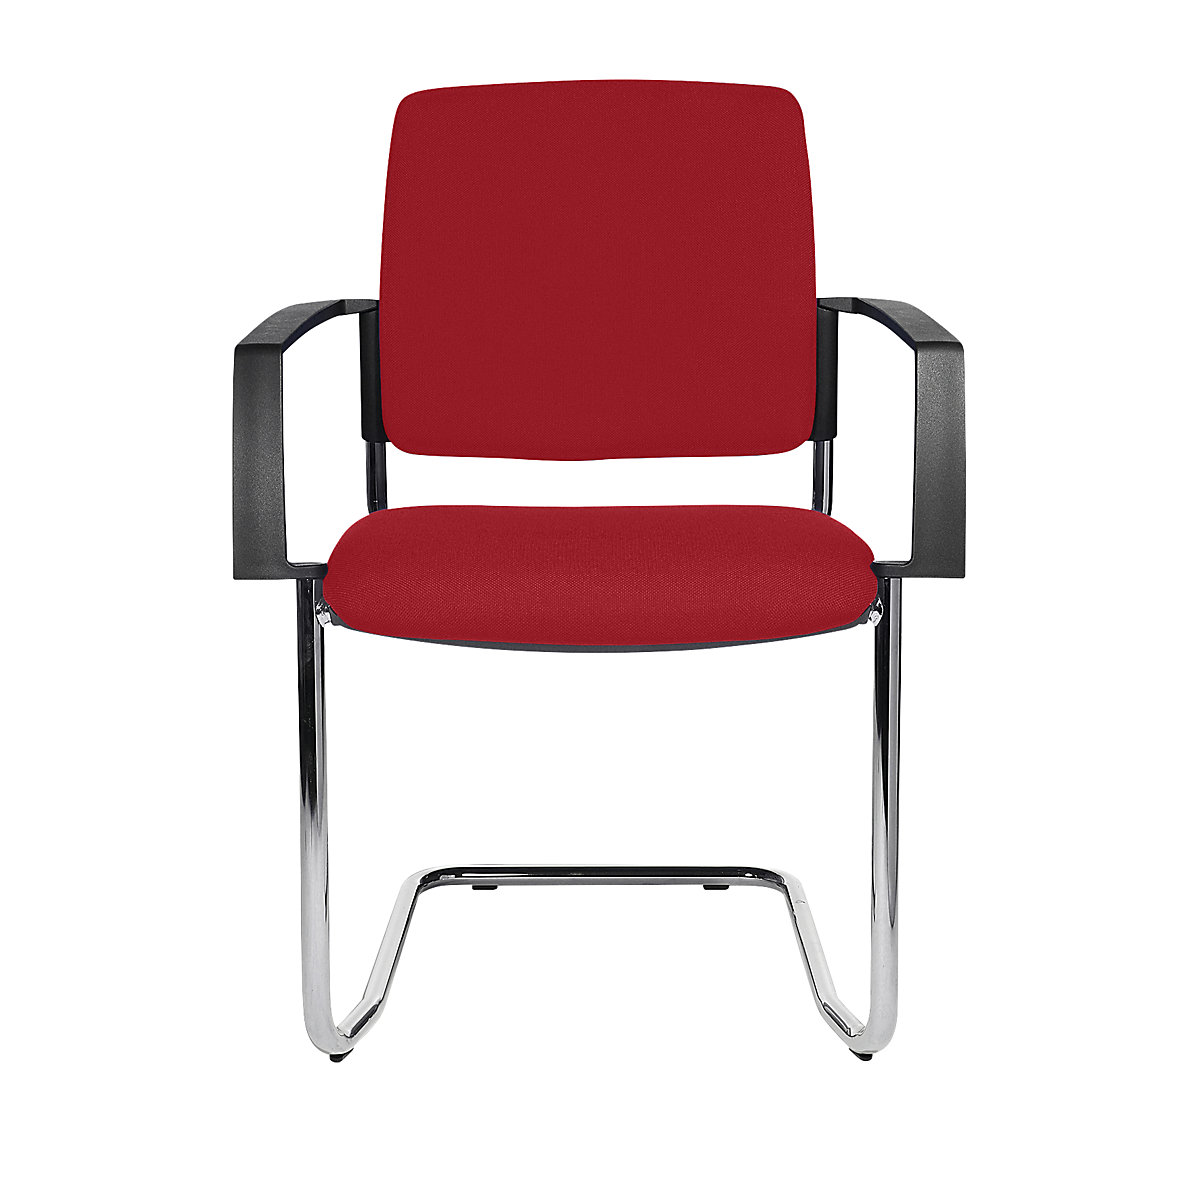 Čalúnená stohovacia stolička – Topstar, kreslo na pružnom podloží, OJ 2 ks, podstavec pochrómovaný, čalúnenie červená-4